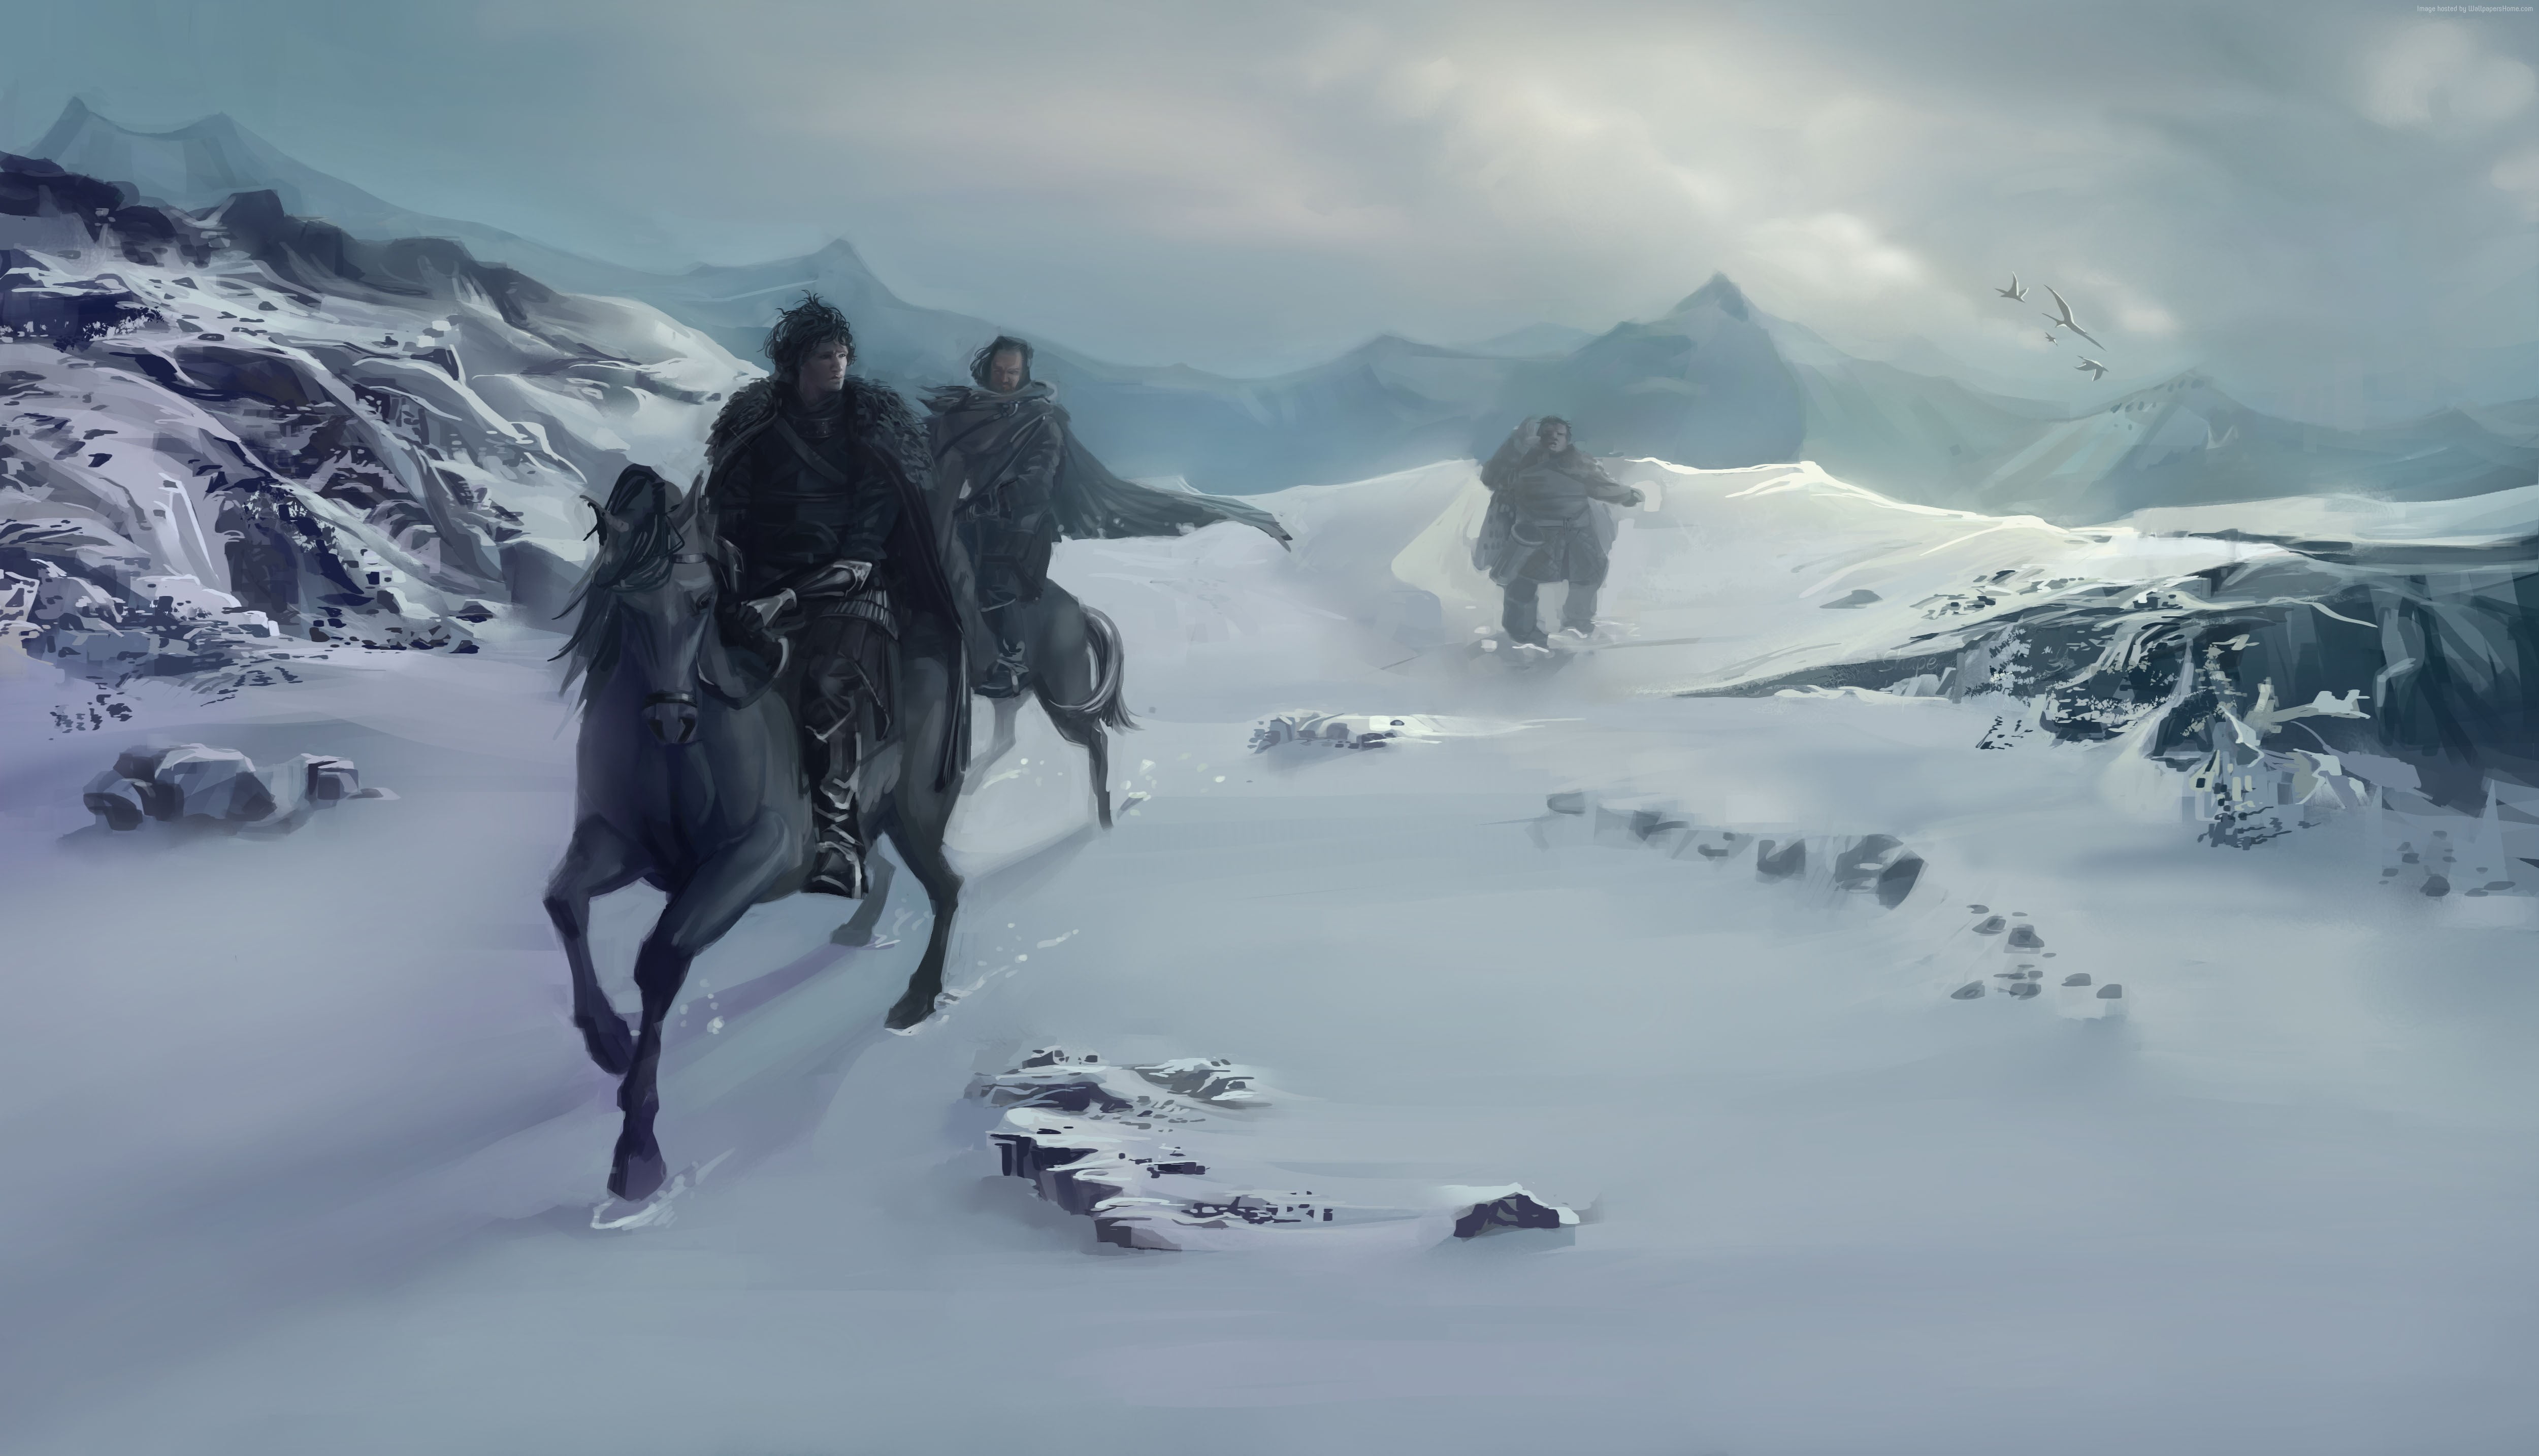 Three men riding on horse running on snowfield HD wallpaper | Wallpaper ...